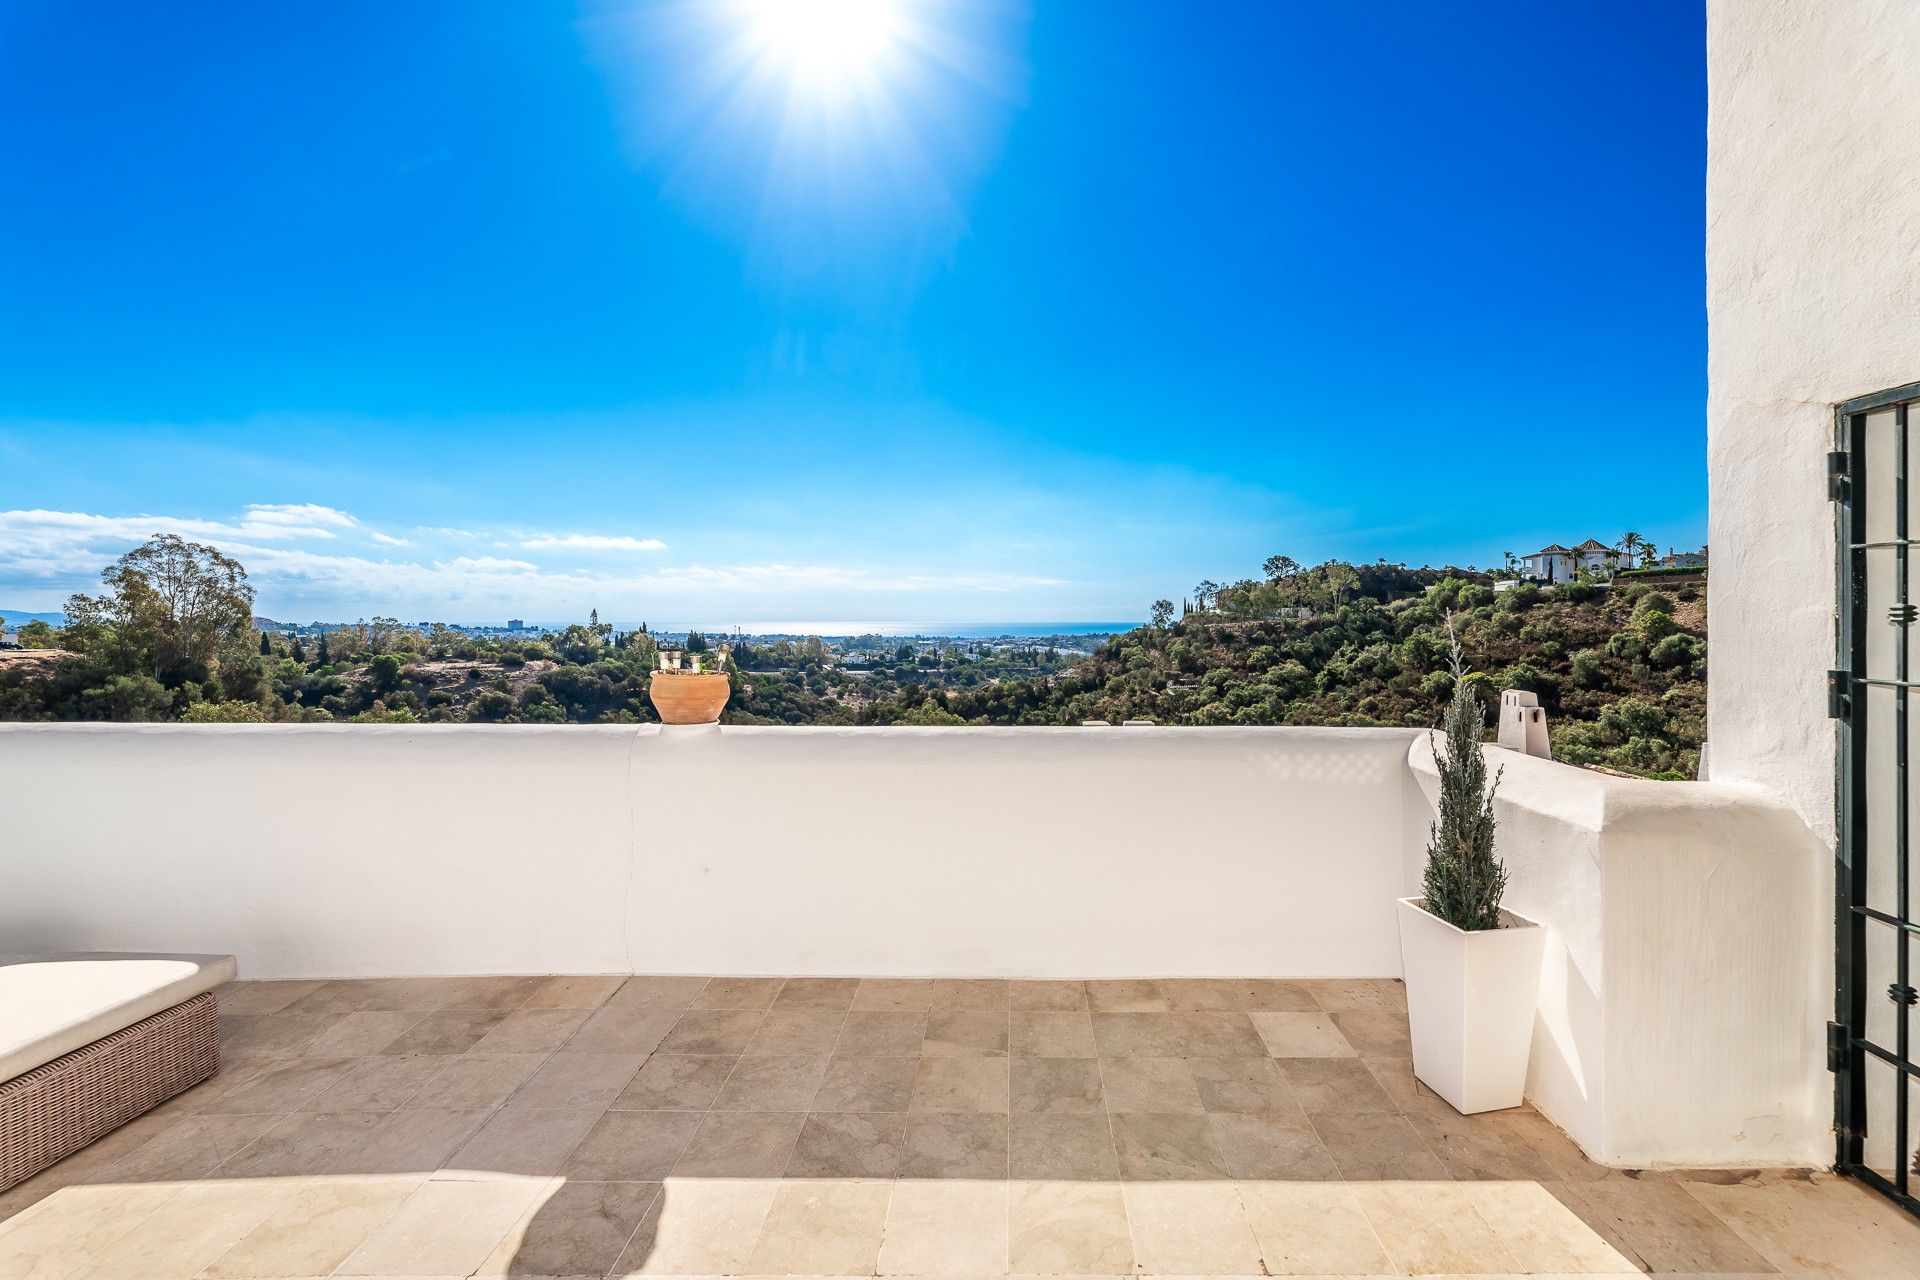 Puerto de Almendro: Spacious apartment with breathtaking views | Engel & Völkers Marbella